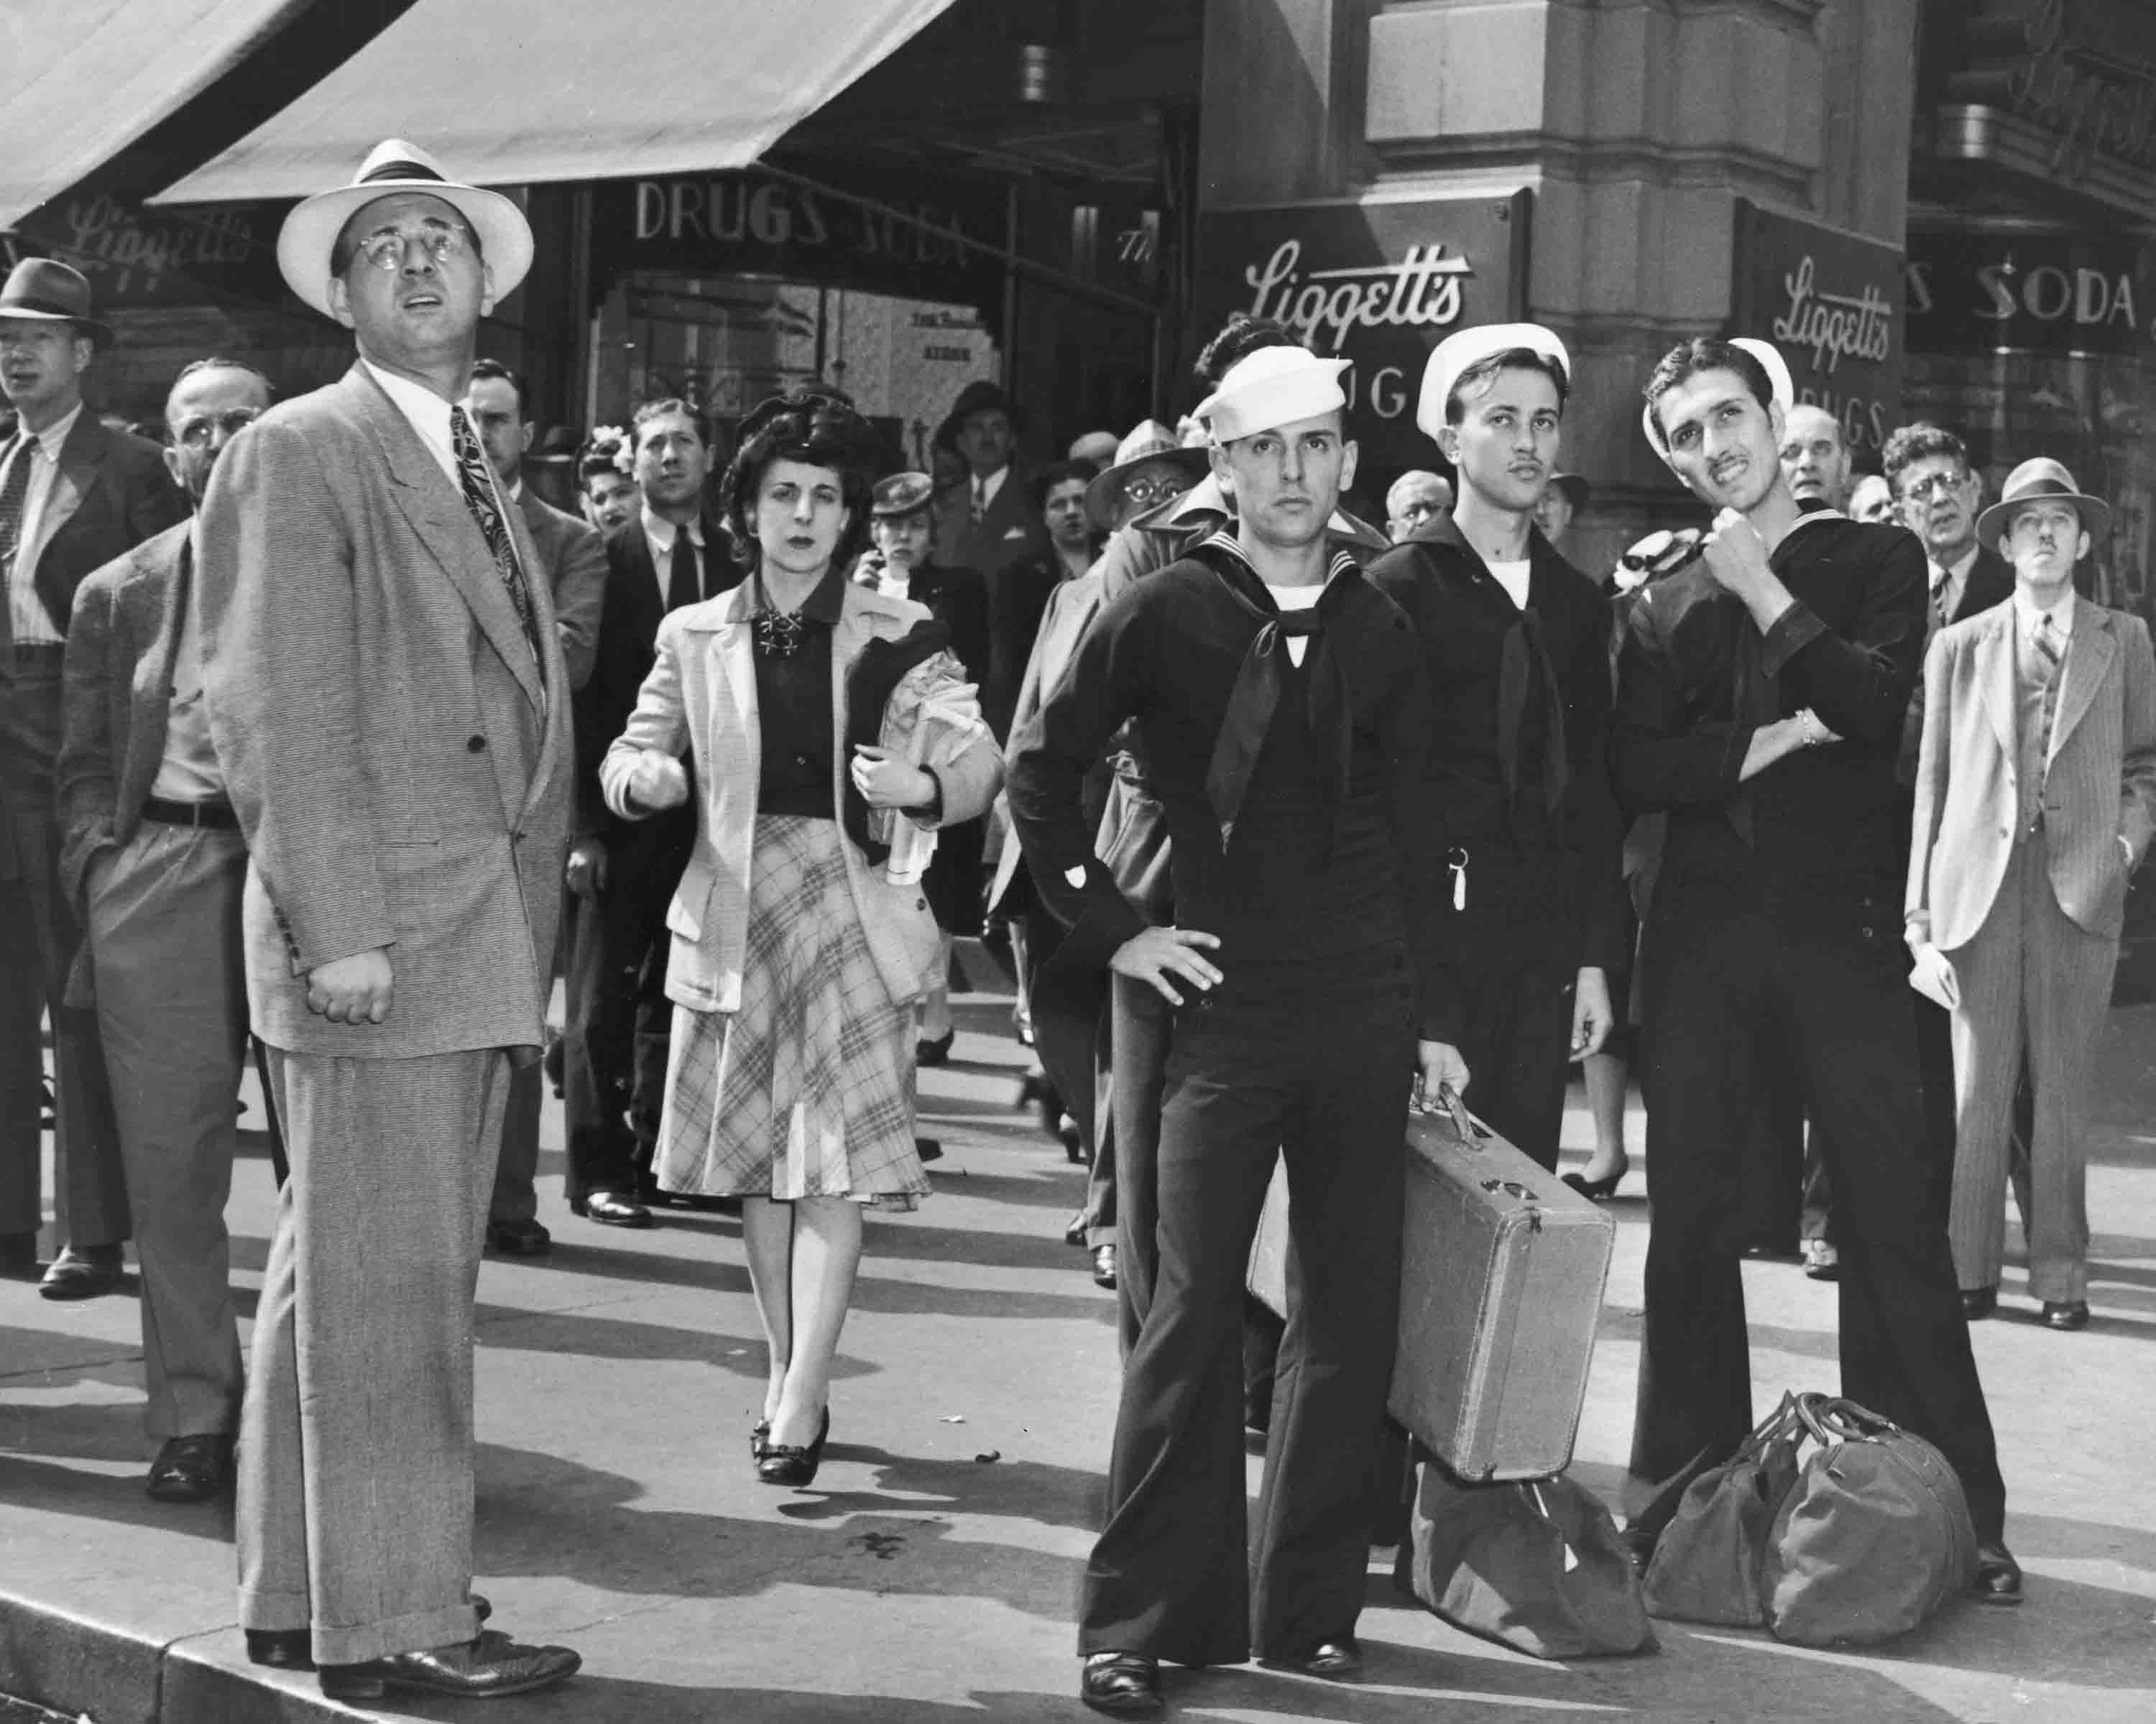 Marinai e civili guardano un cartello elettronico a Times Square per avere notizie dell'invasione del D-Day. 6 giugno 1944. Times Square, New York, NY, USA. Autore Fred Palumbo © courtesy New York World - Telegram & Sun Newspaper Photograph Collection / Library of Congress